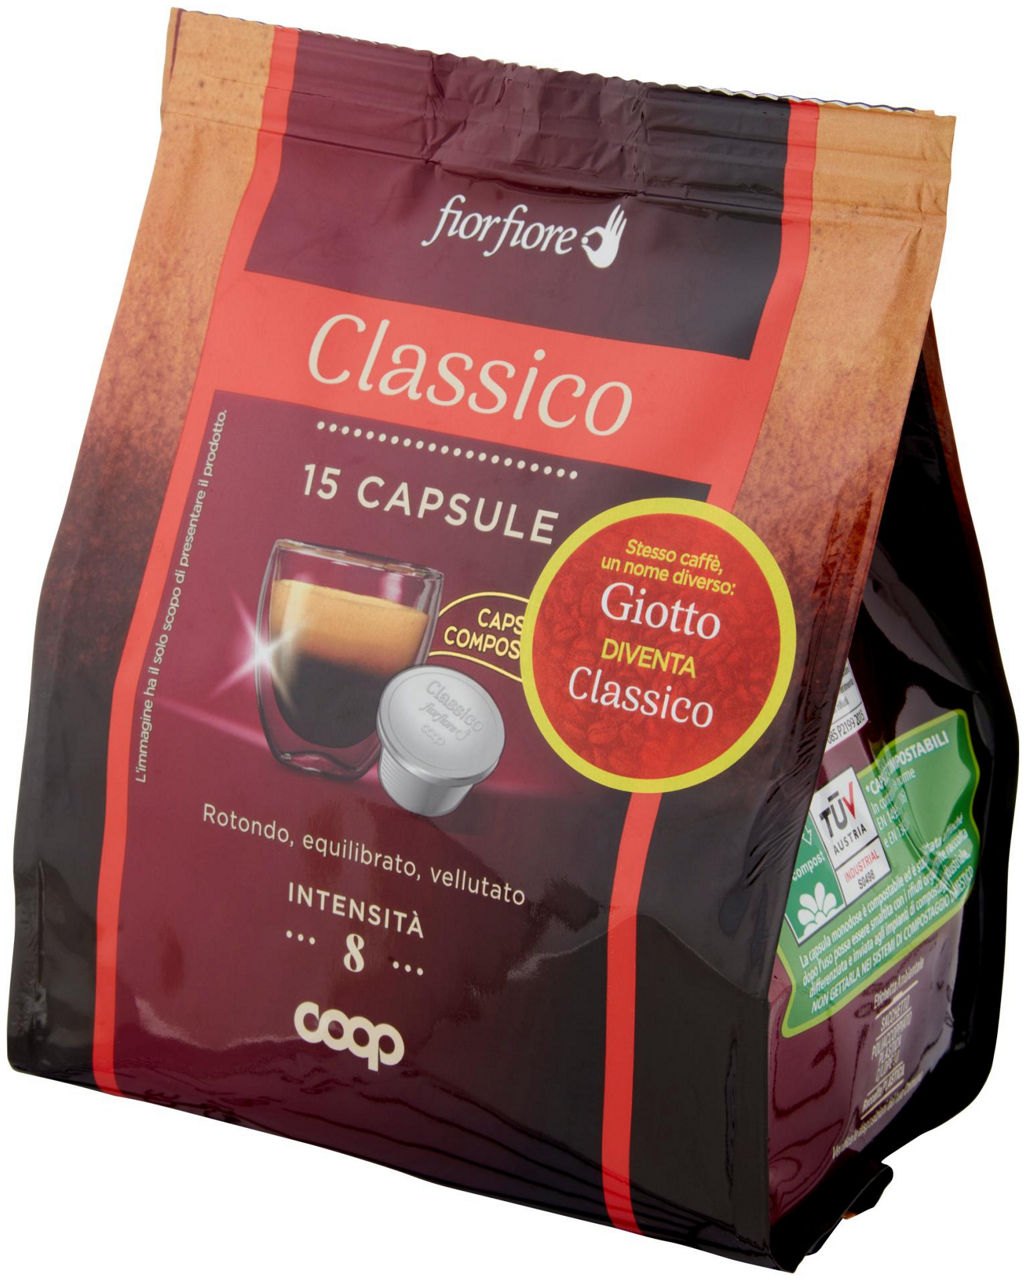 CAFFE' CLASSICO IN CAPSULE COMPOSTABILI GIOTTO FIOR FIORE COOP PZ 15 G 100 - 6